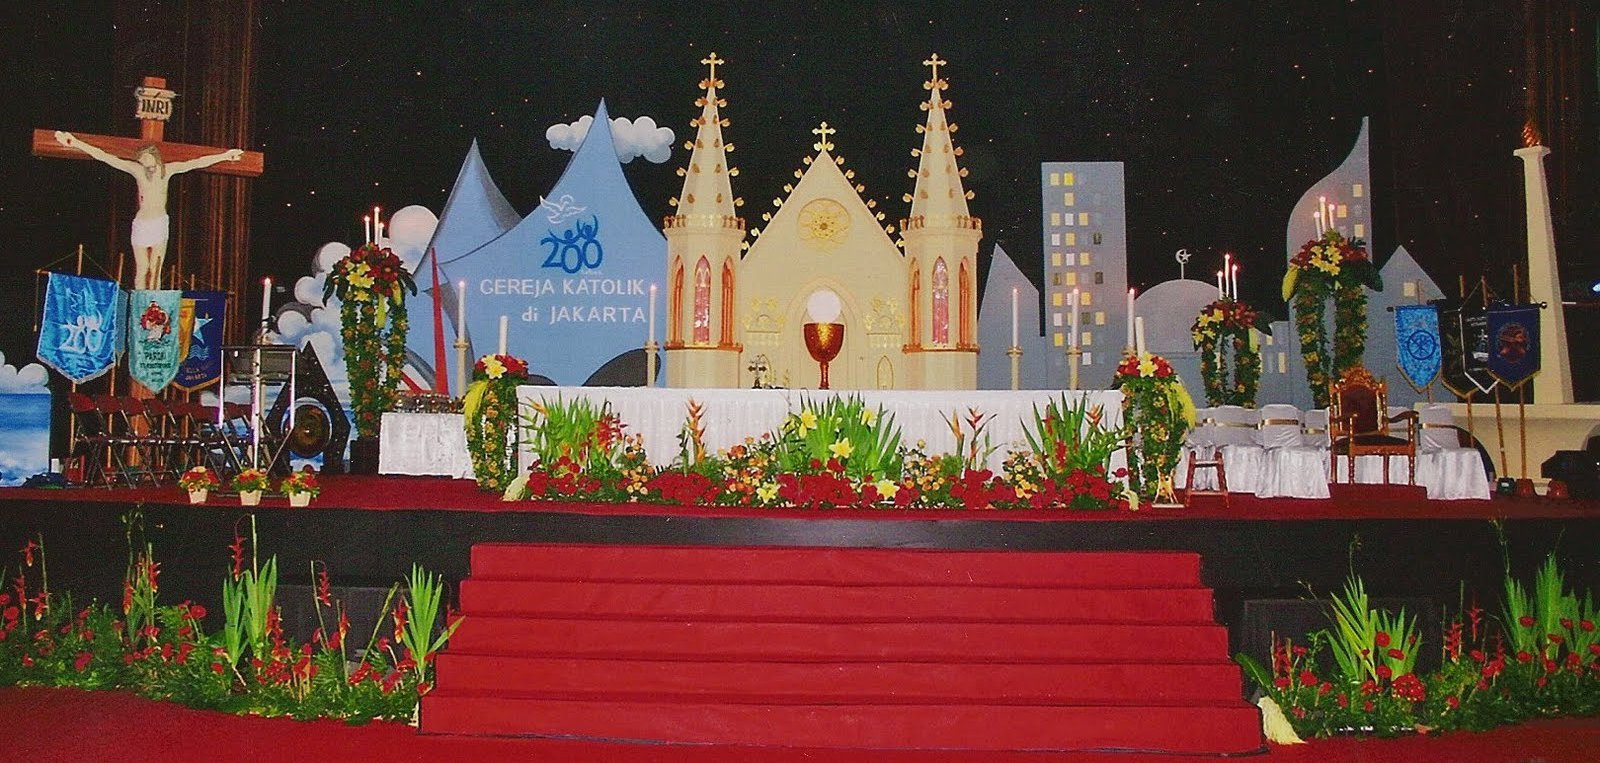  Dekorasi  Natal  Altar Gereja  Kumpulan Dekorasi  Terlengkap